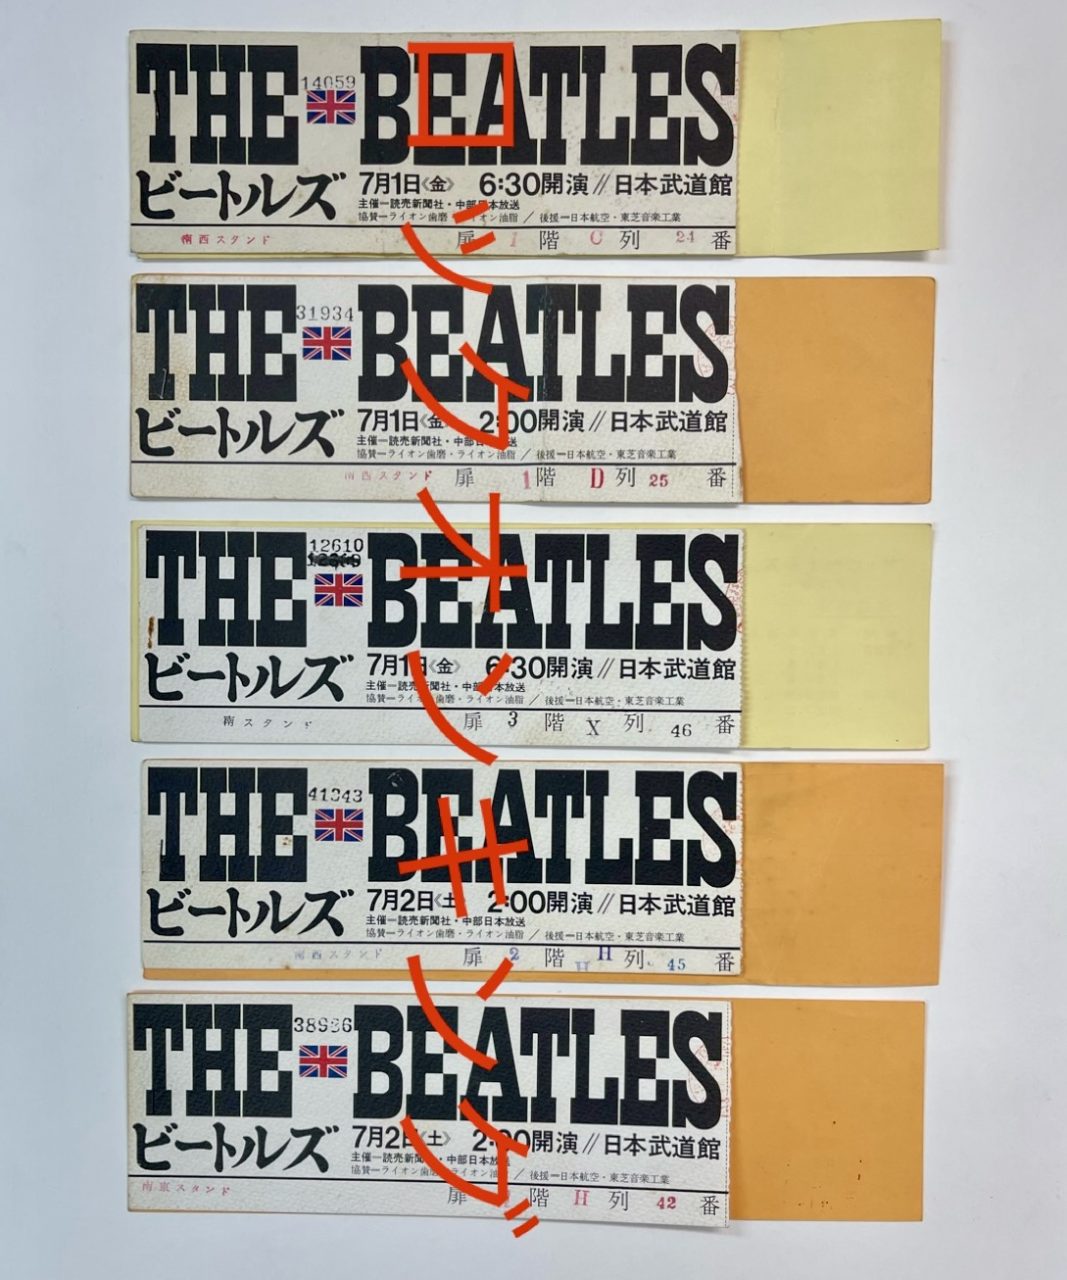 THE BEATLES コンサート チケット半券 1966 ビートルズ来日公演